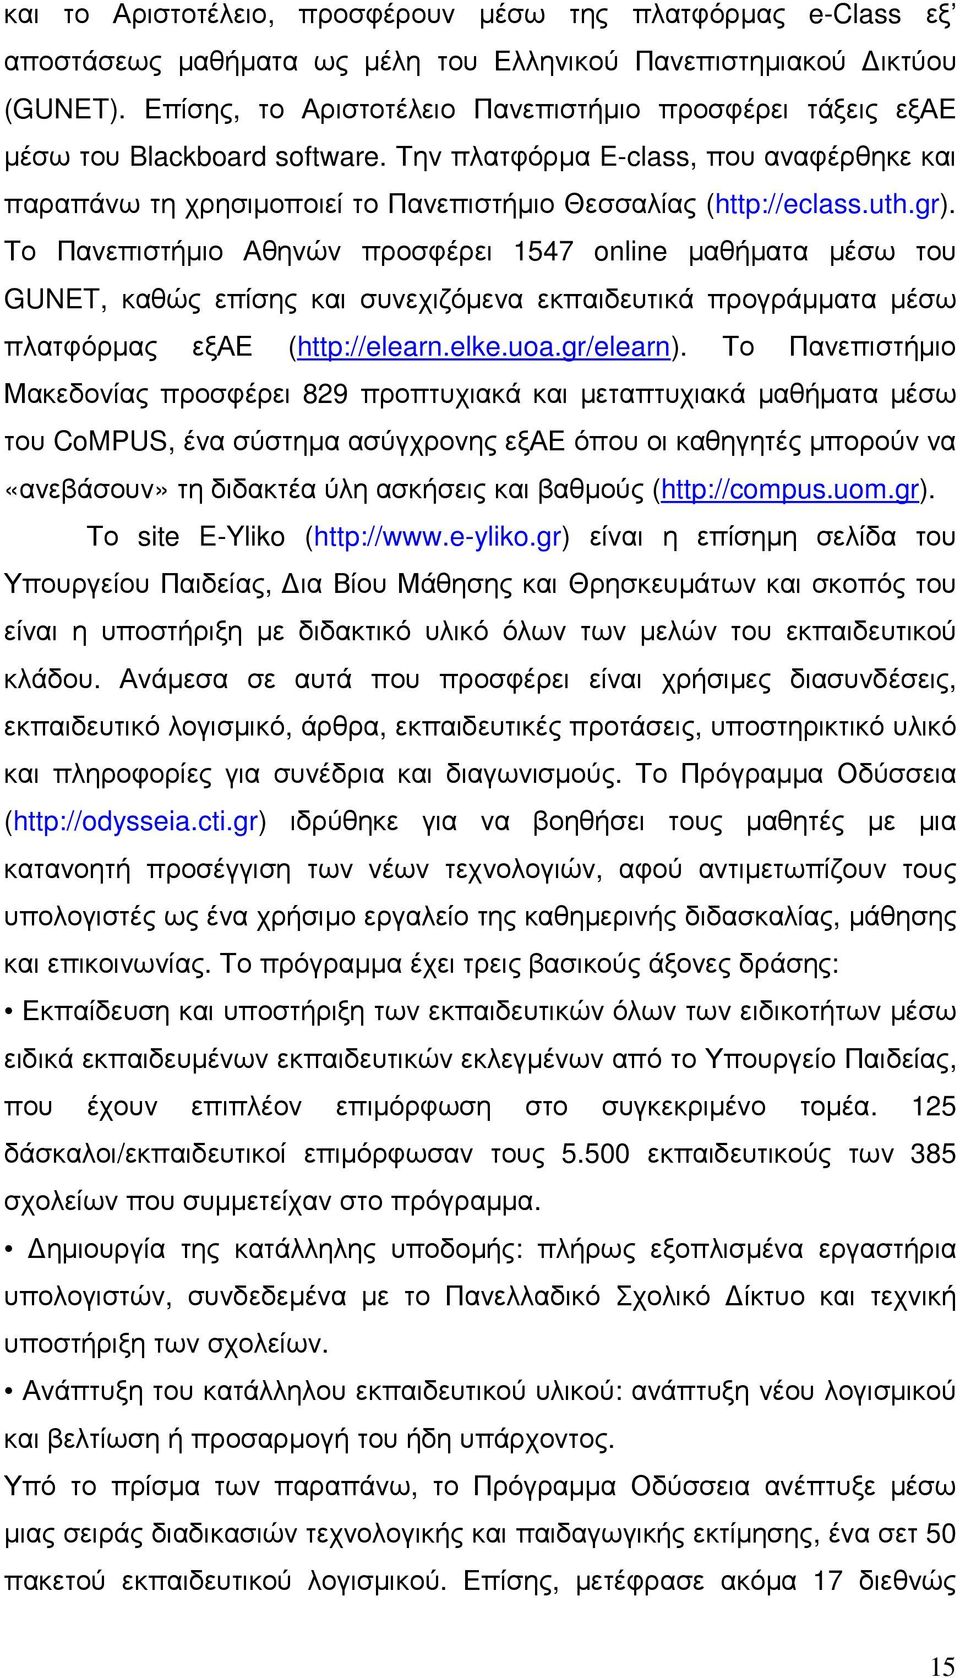 uth.gr). Το Πανεπιστήµιο Αθηνών προσφέρει 1547 online µαθήµατα µέσω του GUNET, καθώς επίσης και συνεχιζόµενα εκπαιδευτικά προγράµµατα µέσω πλατφόρµας εξαε (http://elearn.elke.uoa.gr/elearn).